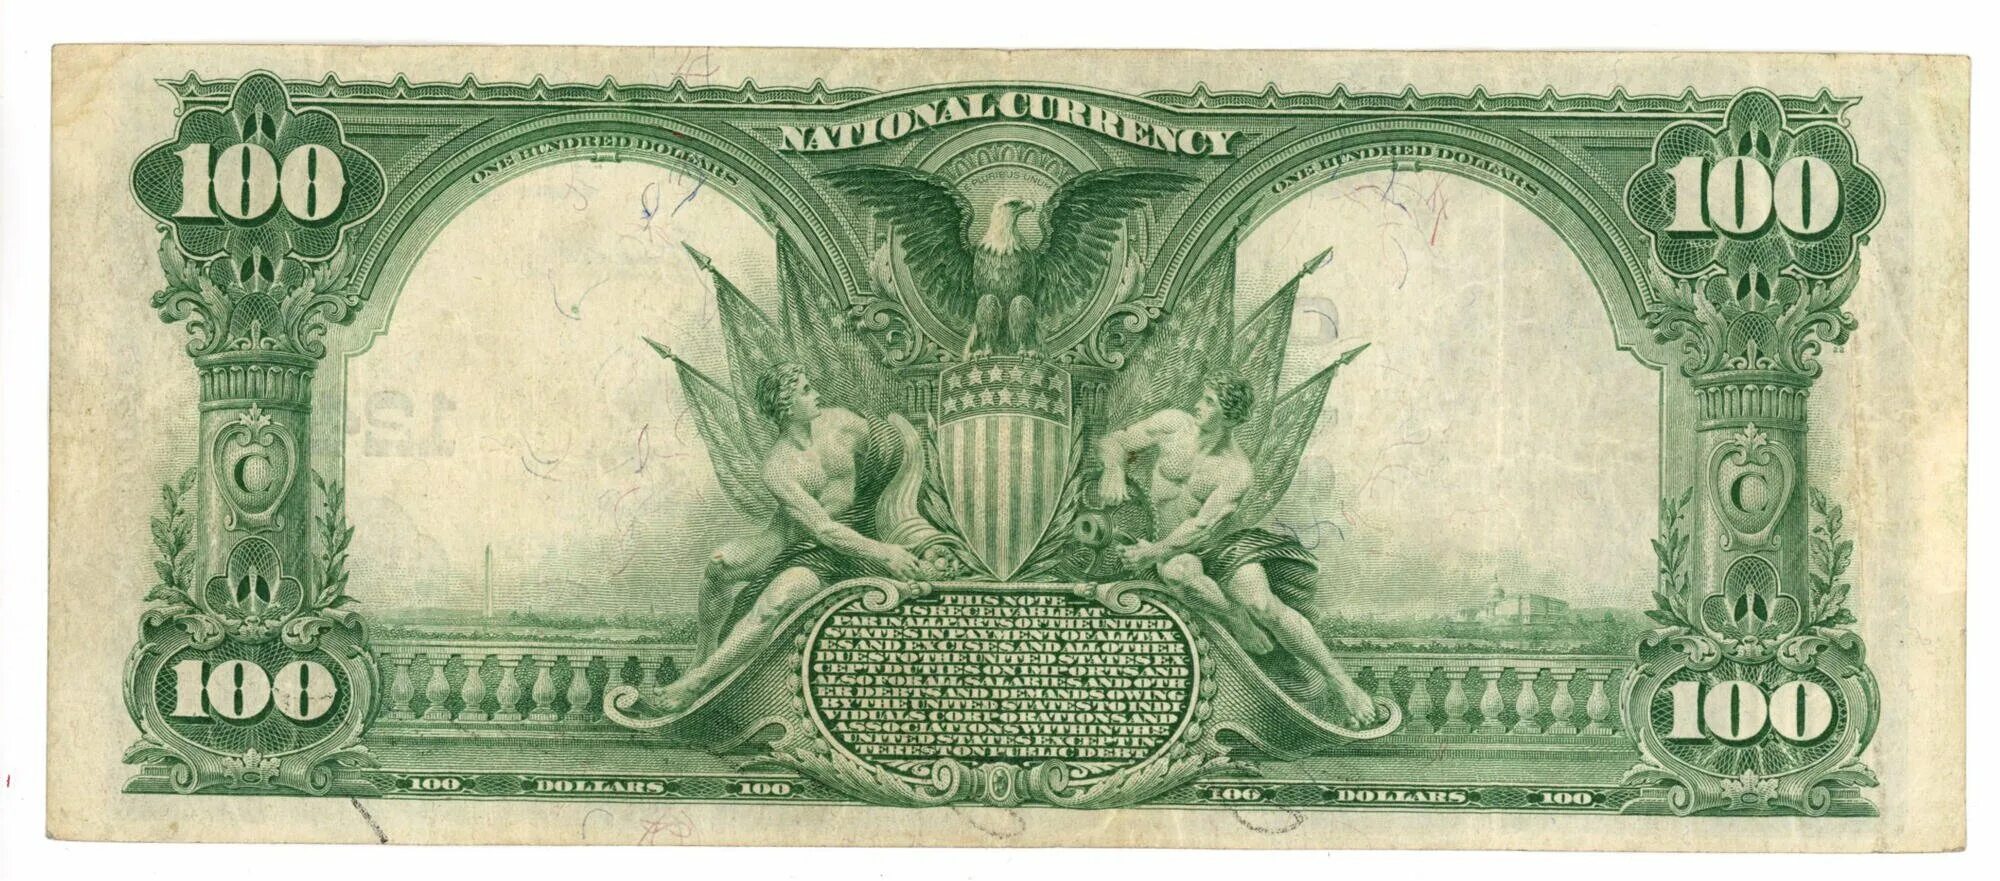 Сто дол. Купюра 100 долларов США. Доллар США 1930 года. 100 Долларов США 1902. Доллары 20 века.